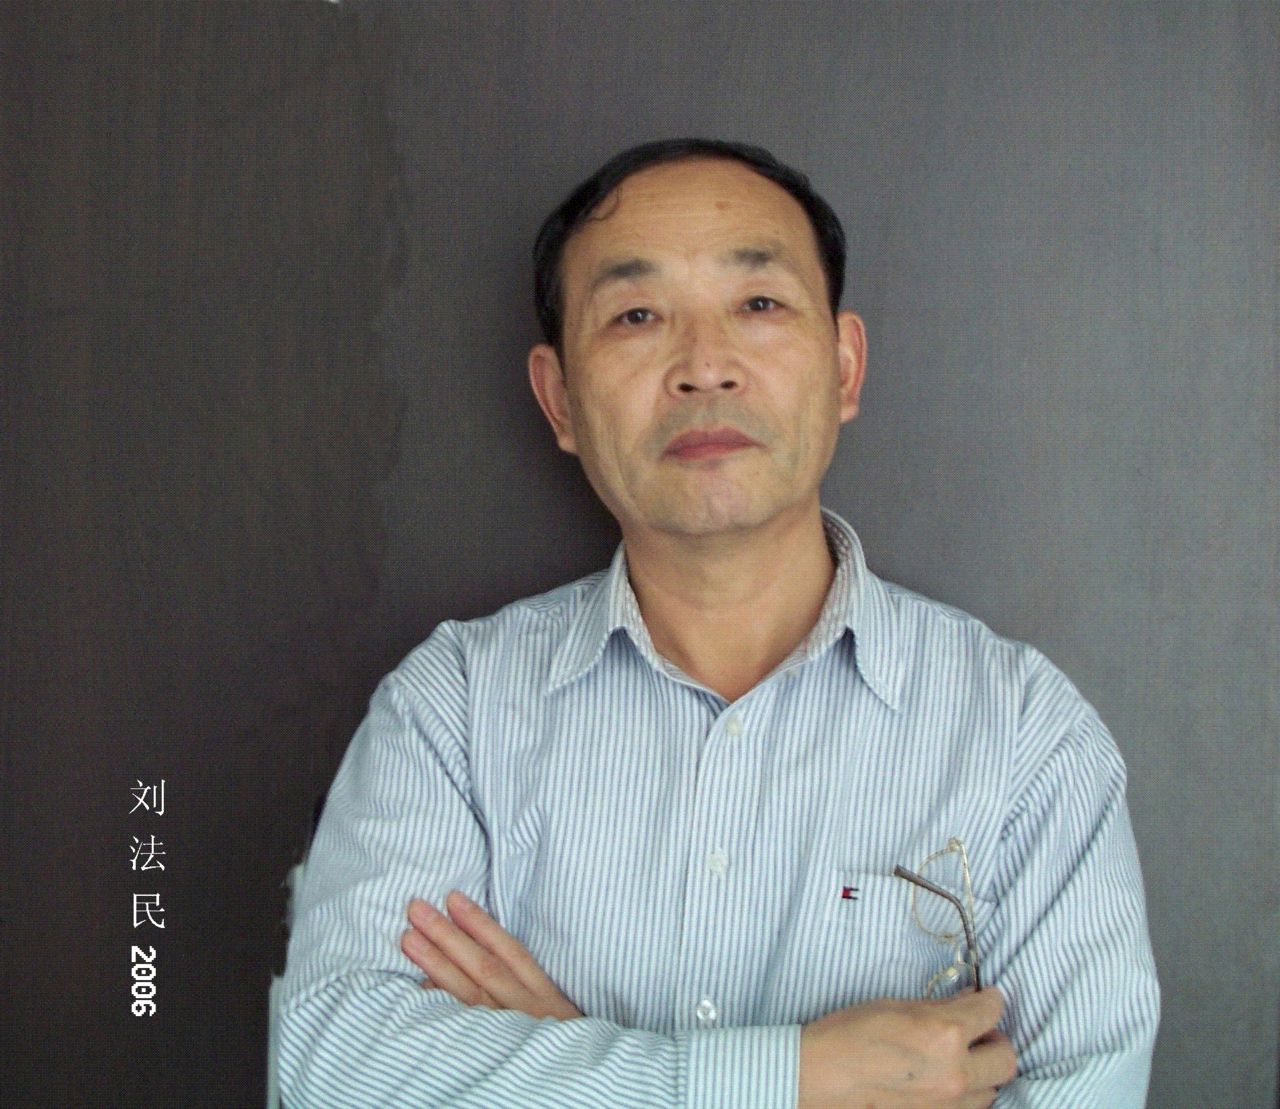 劉法民(南昌師範學院中文系教授)